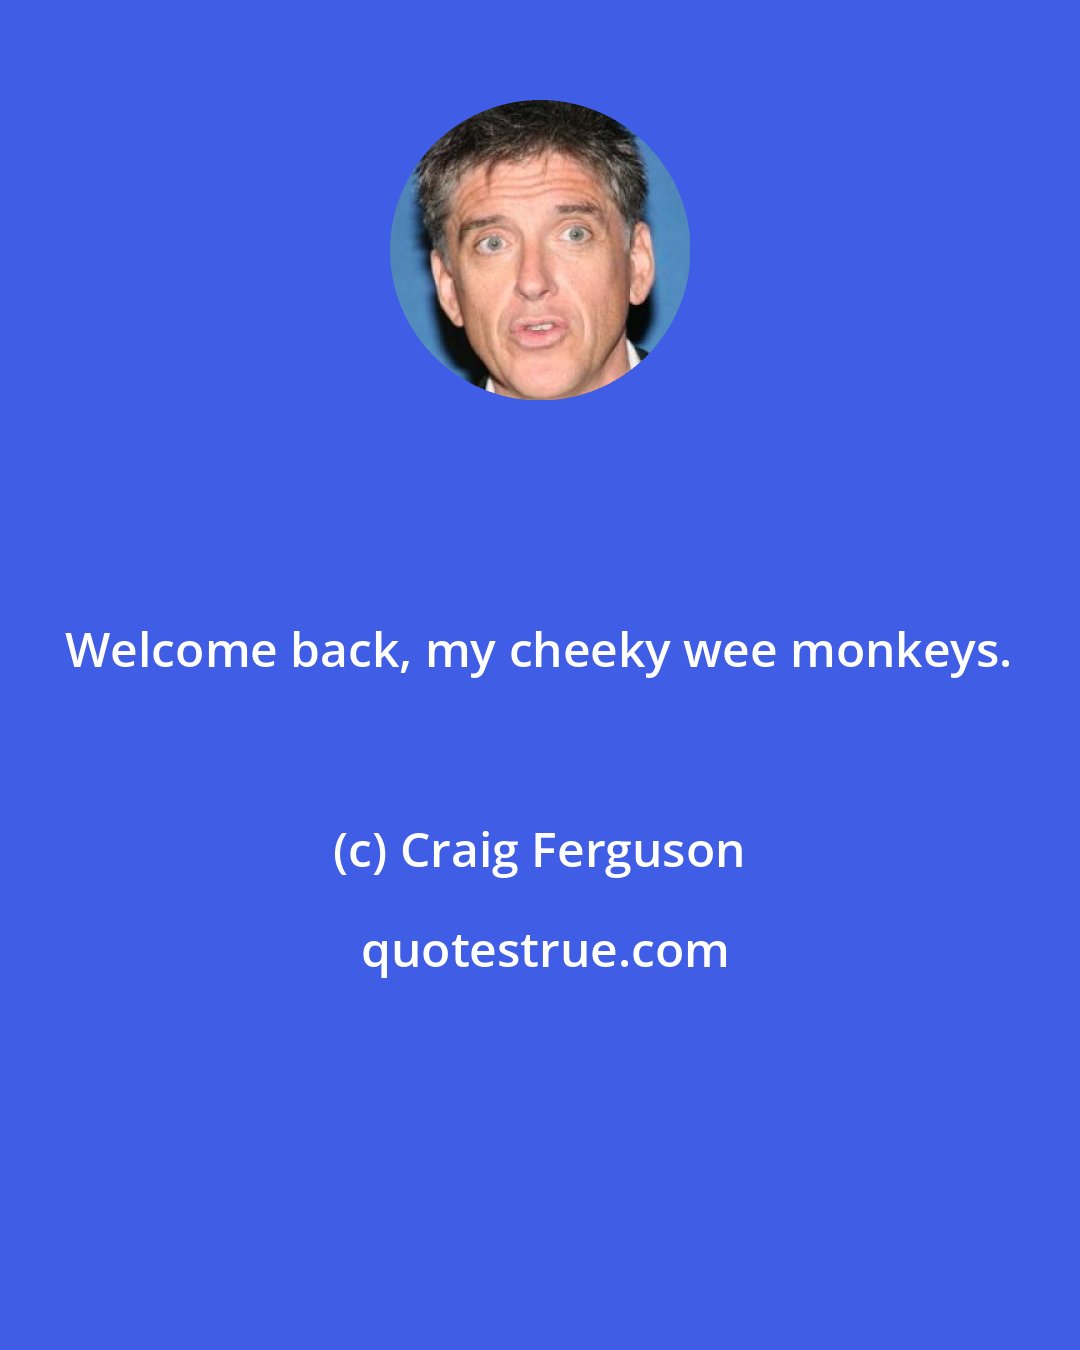 Craig Ferguson: Welcome back, my cheeky wee monkeys.